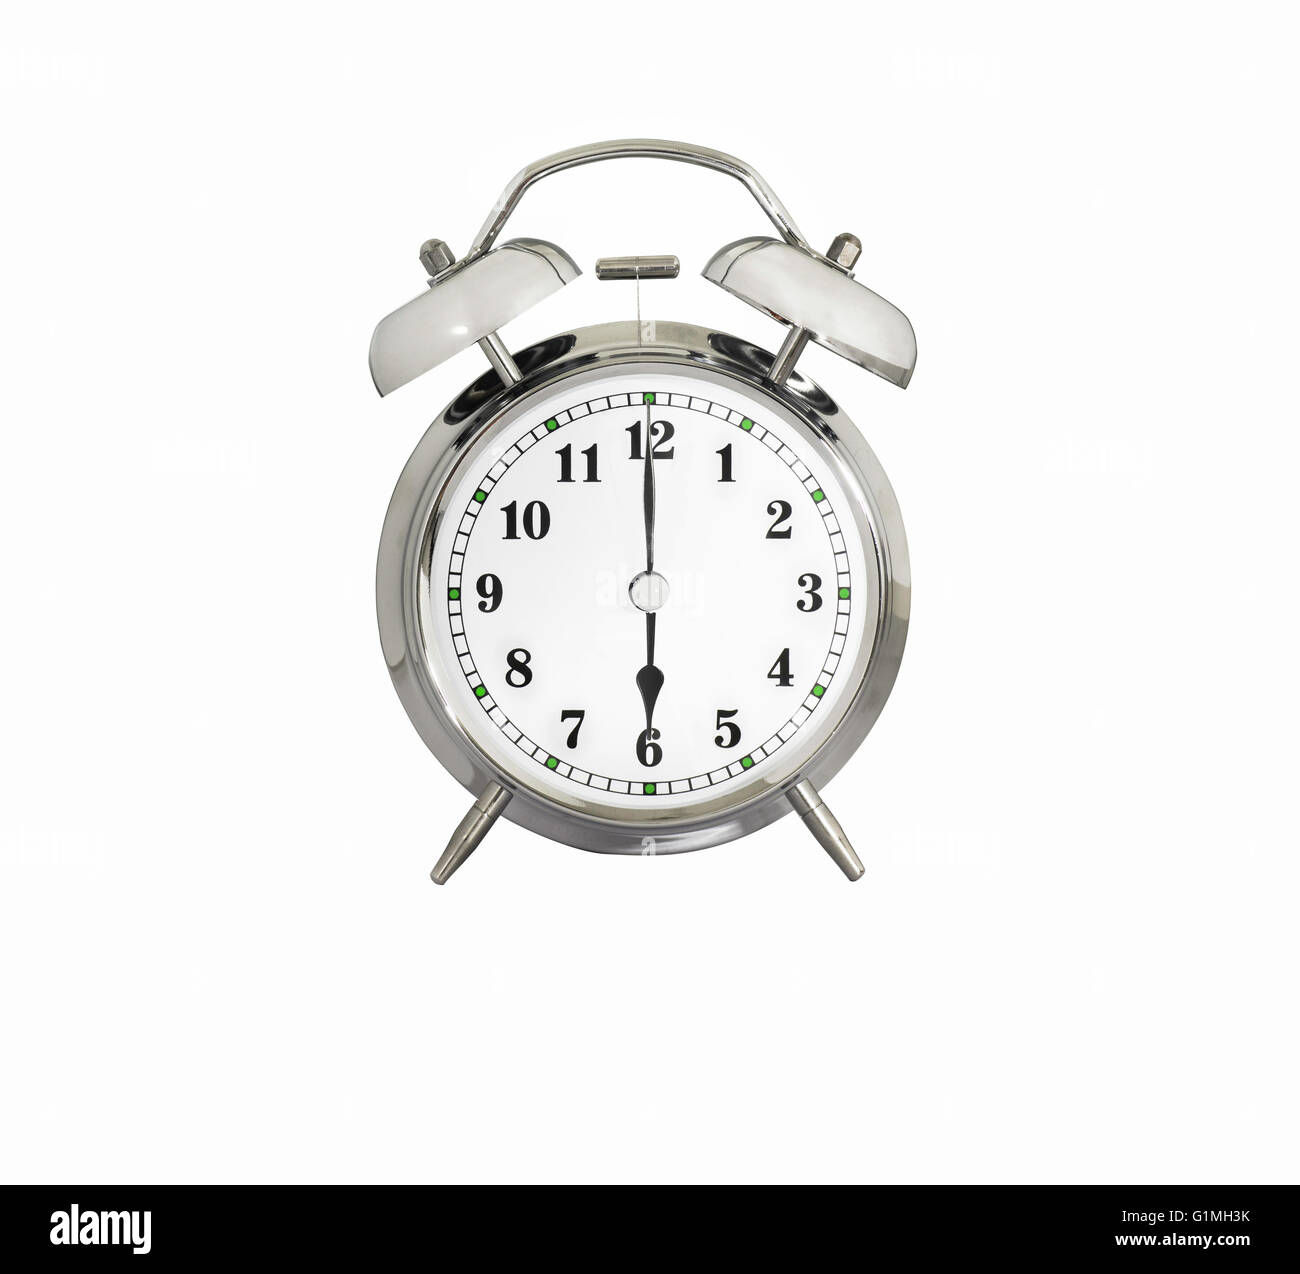 Tradizionale Orologio sveglia che mostra 6:00 Foto stock - Alamy